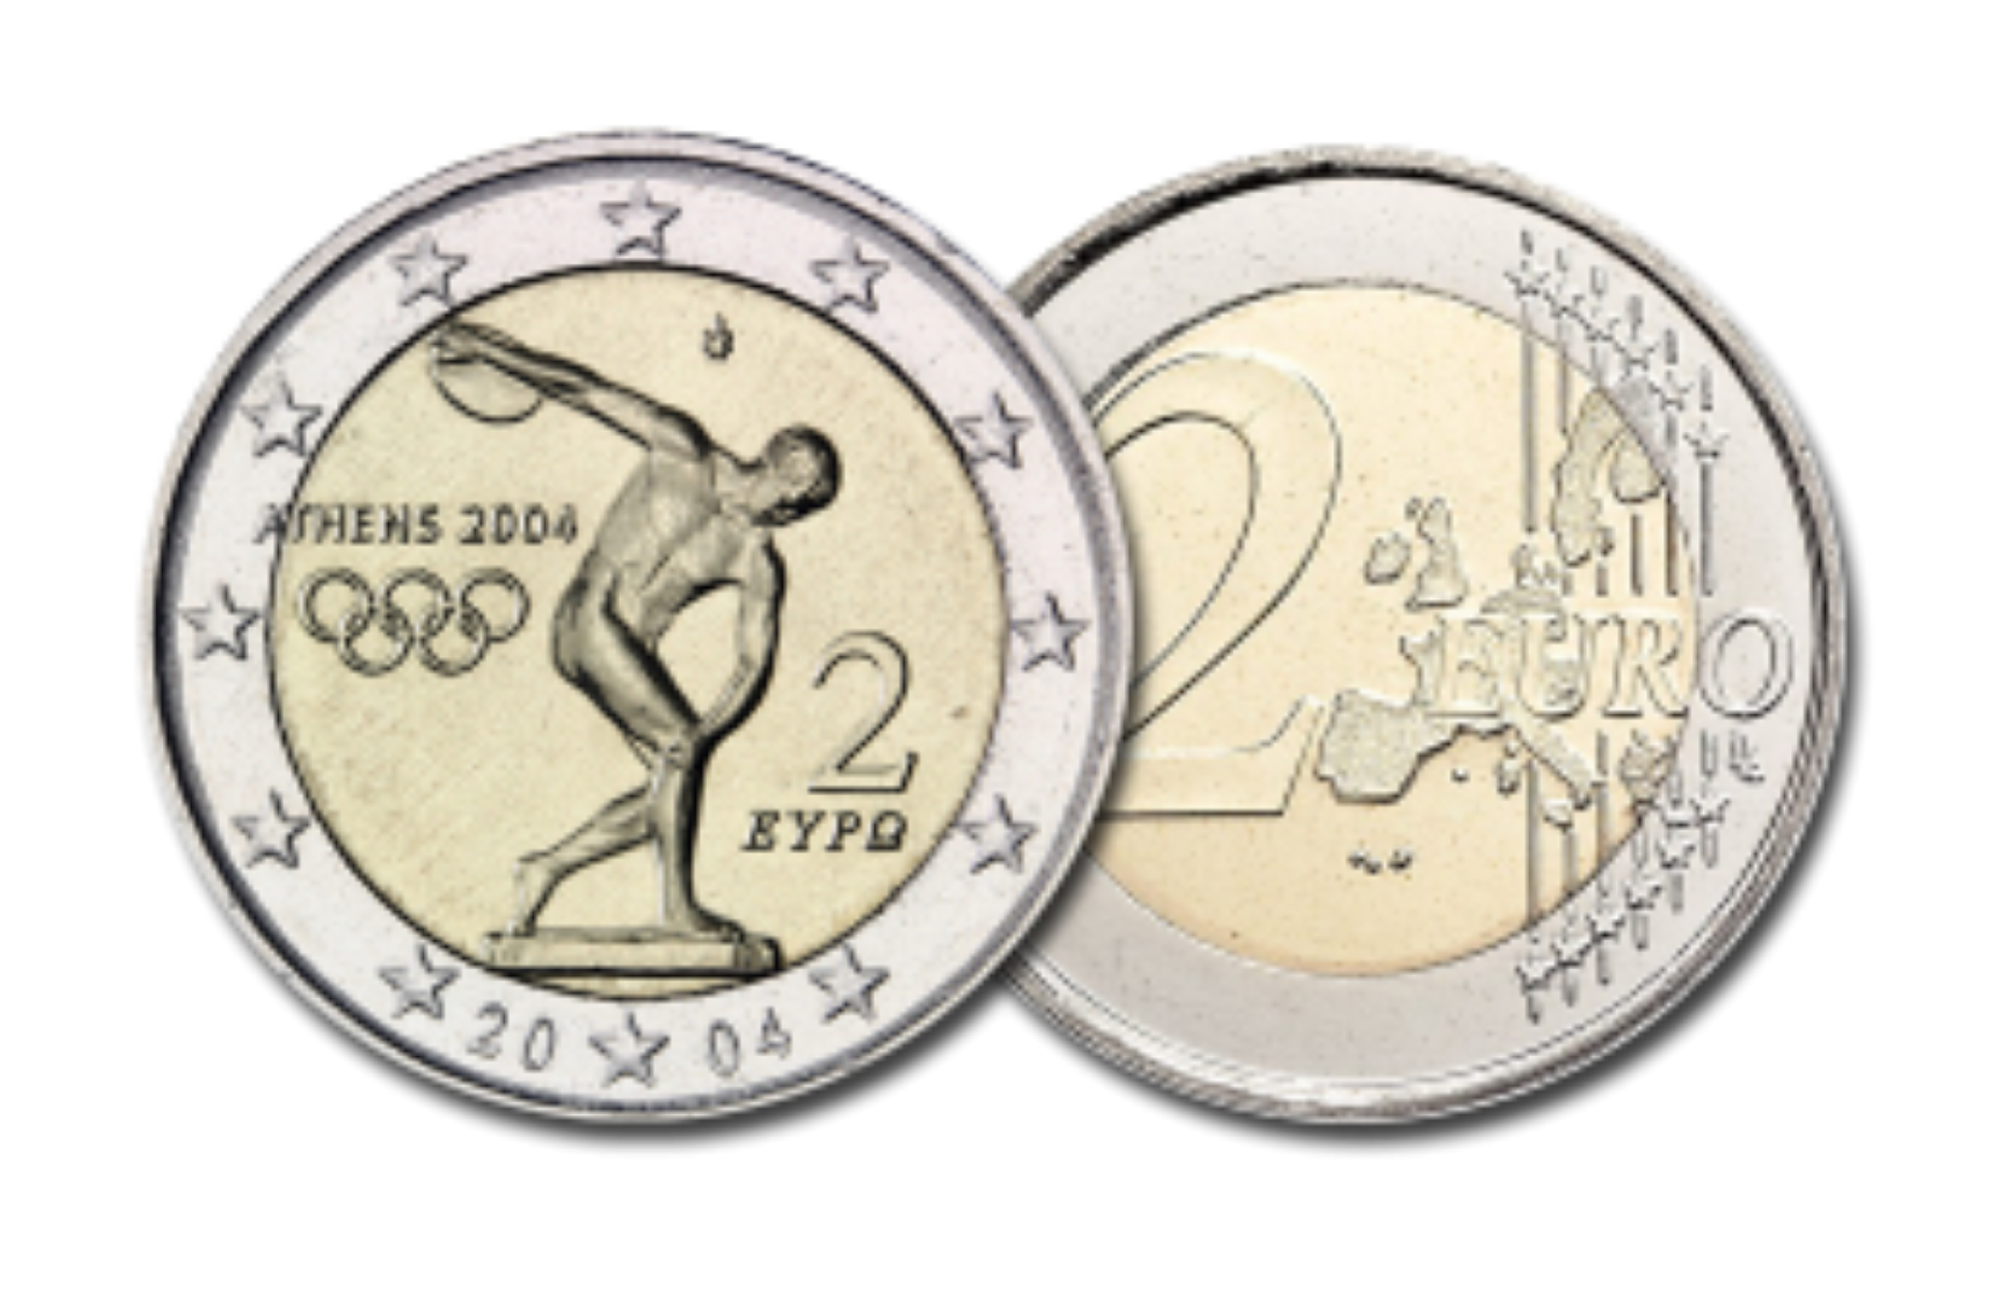 2 eiro piemiņas monētu kolekcija